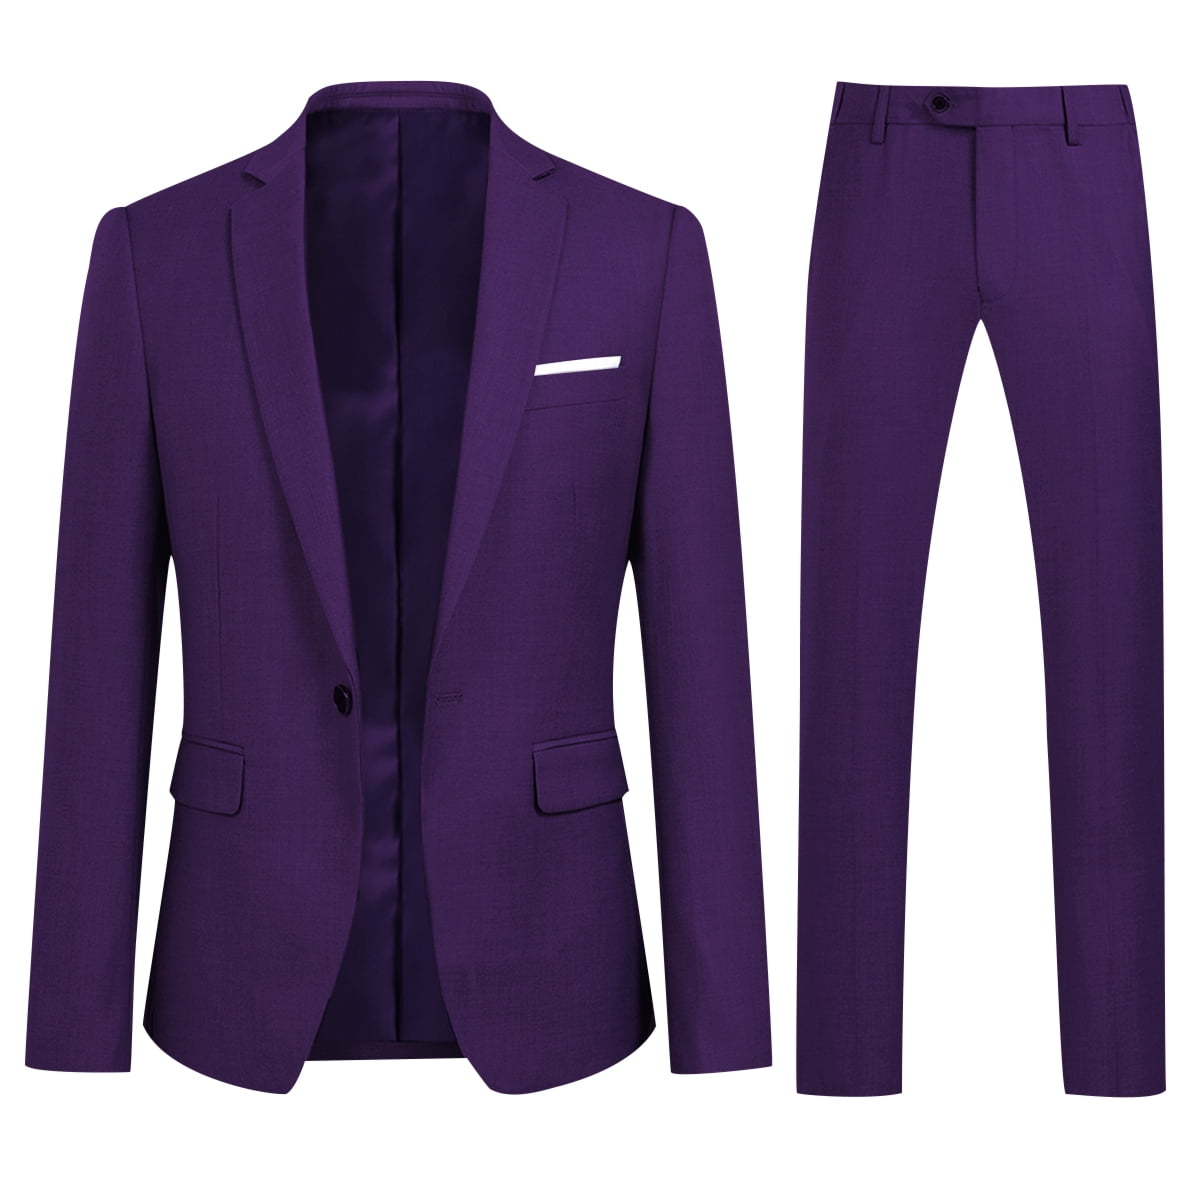 Cloudstyle Men's 2-Piece Suits Slim Fit 1 Button Dress Suit Jacket ...